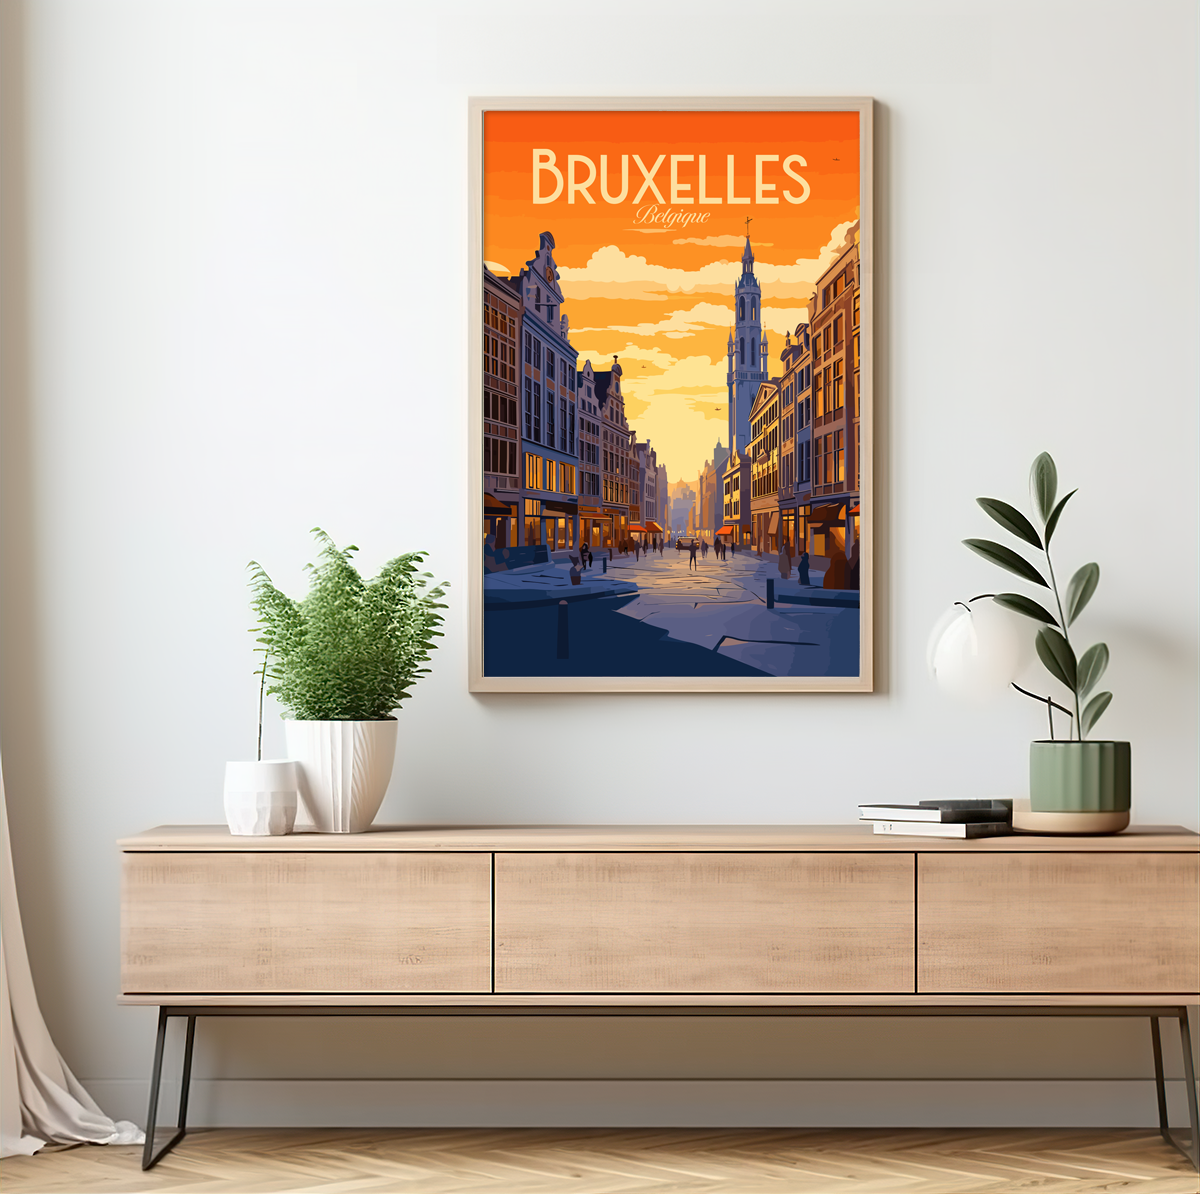 Bruxelles poster by bon voyage design